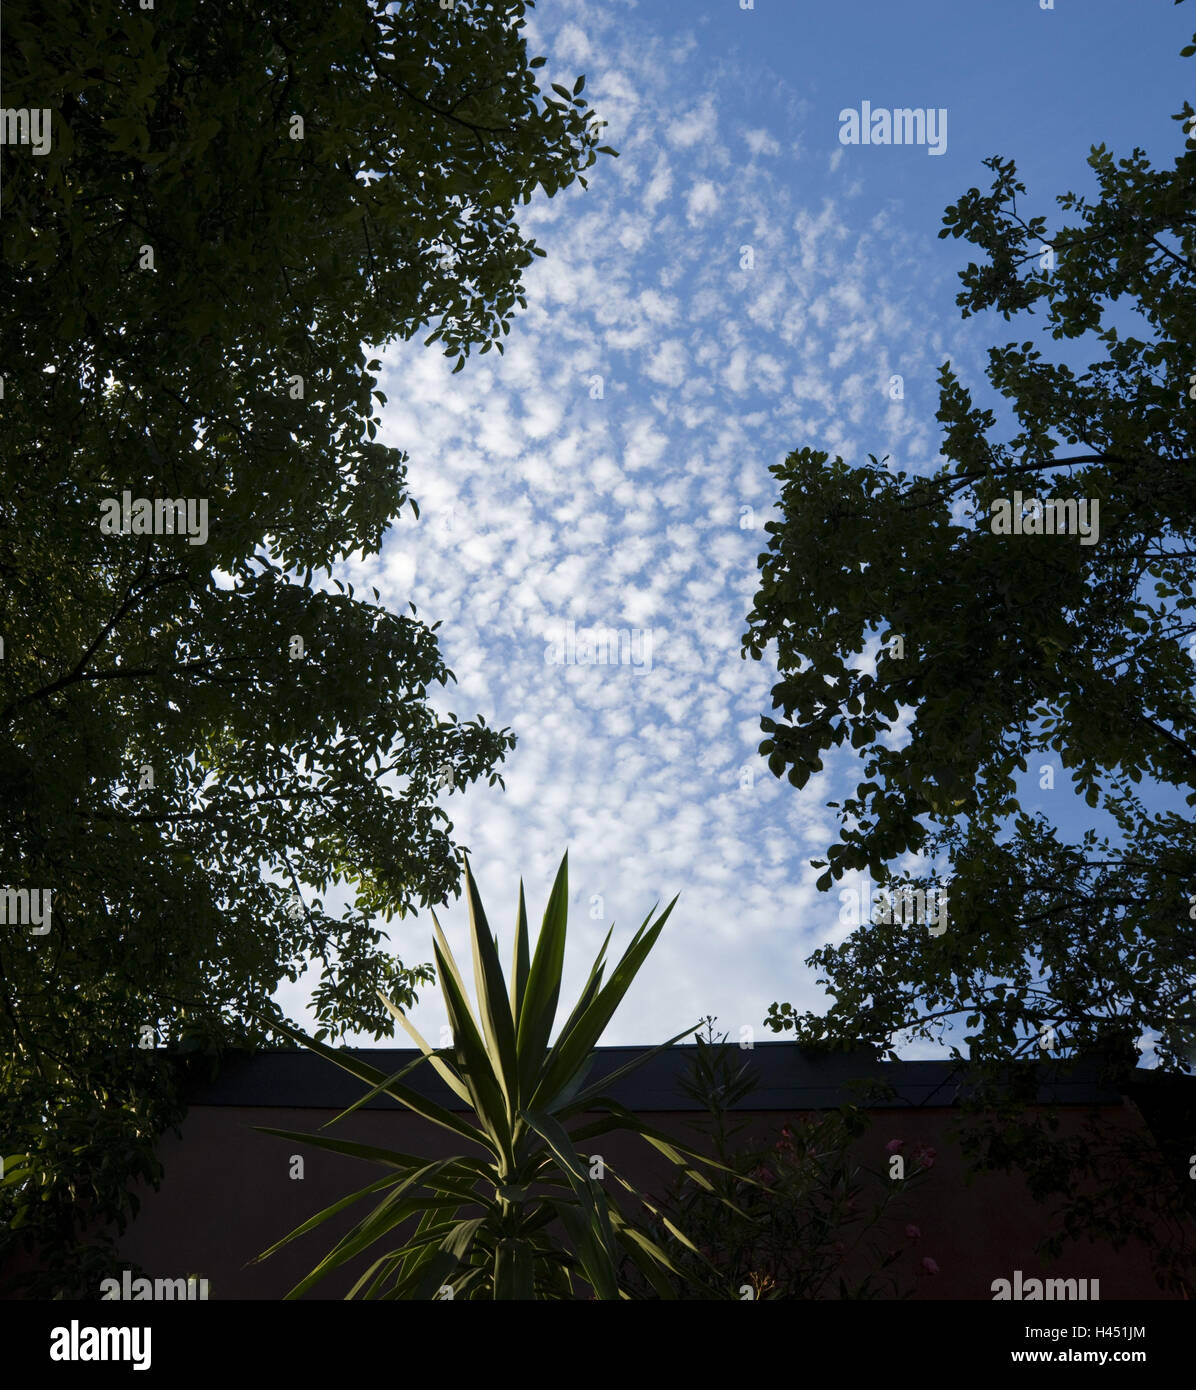 Giardino, yucca palm, le latifoglie, cielo nuvoloso, luce posteriore, Foto Stock